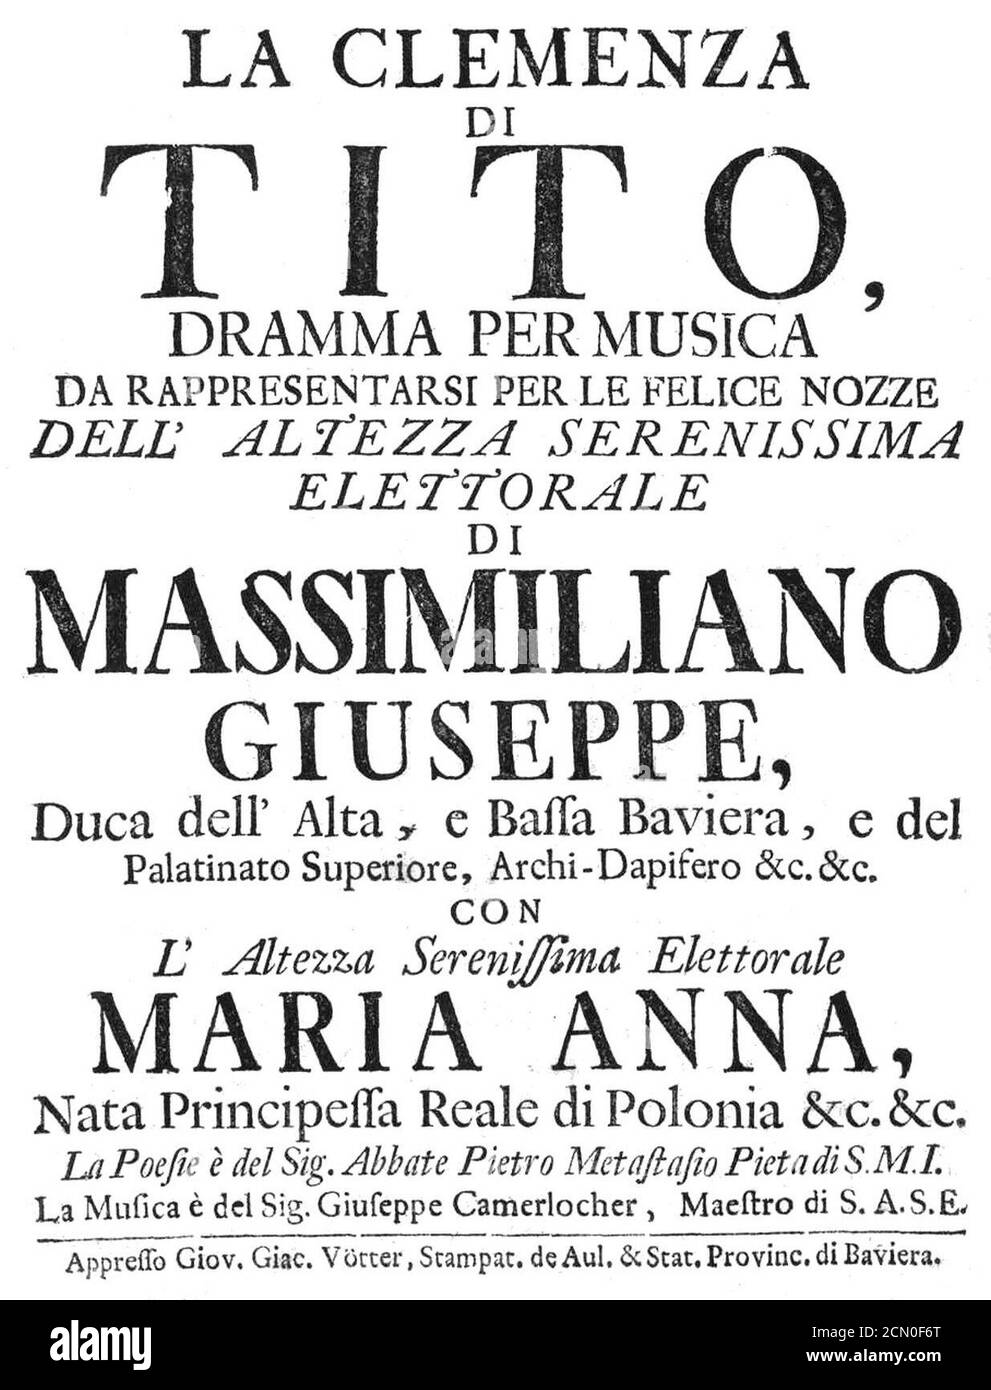 Joseph Anton Camerloher - La Clemenza di Tito - italian titlepage of the libretto - Munich 1747. Stock Photo